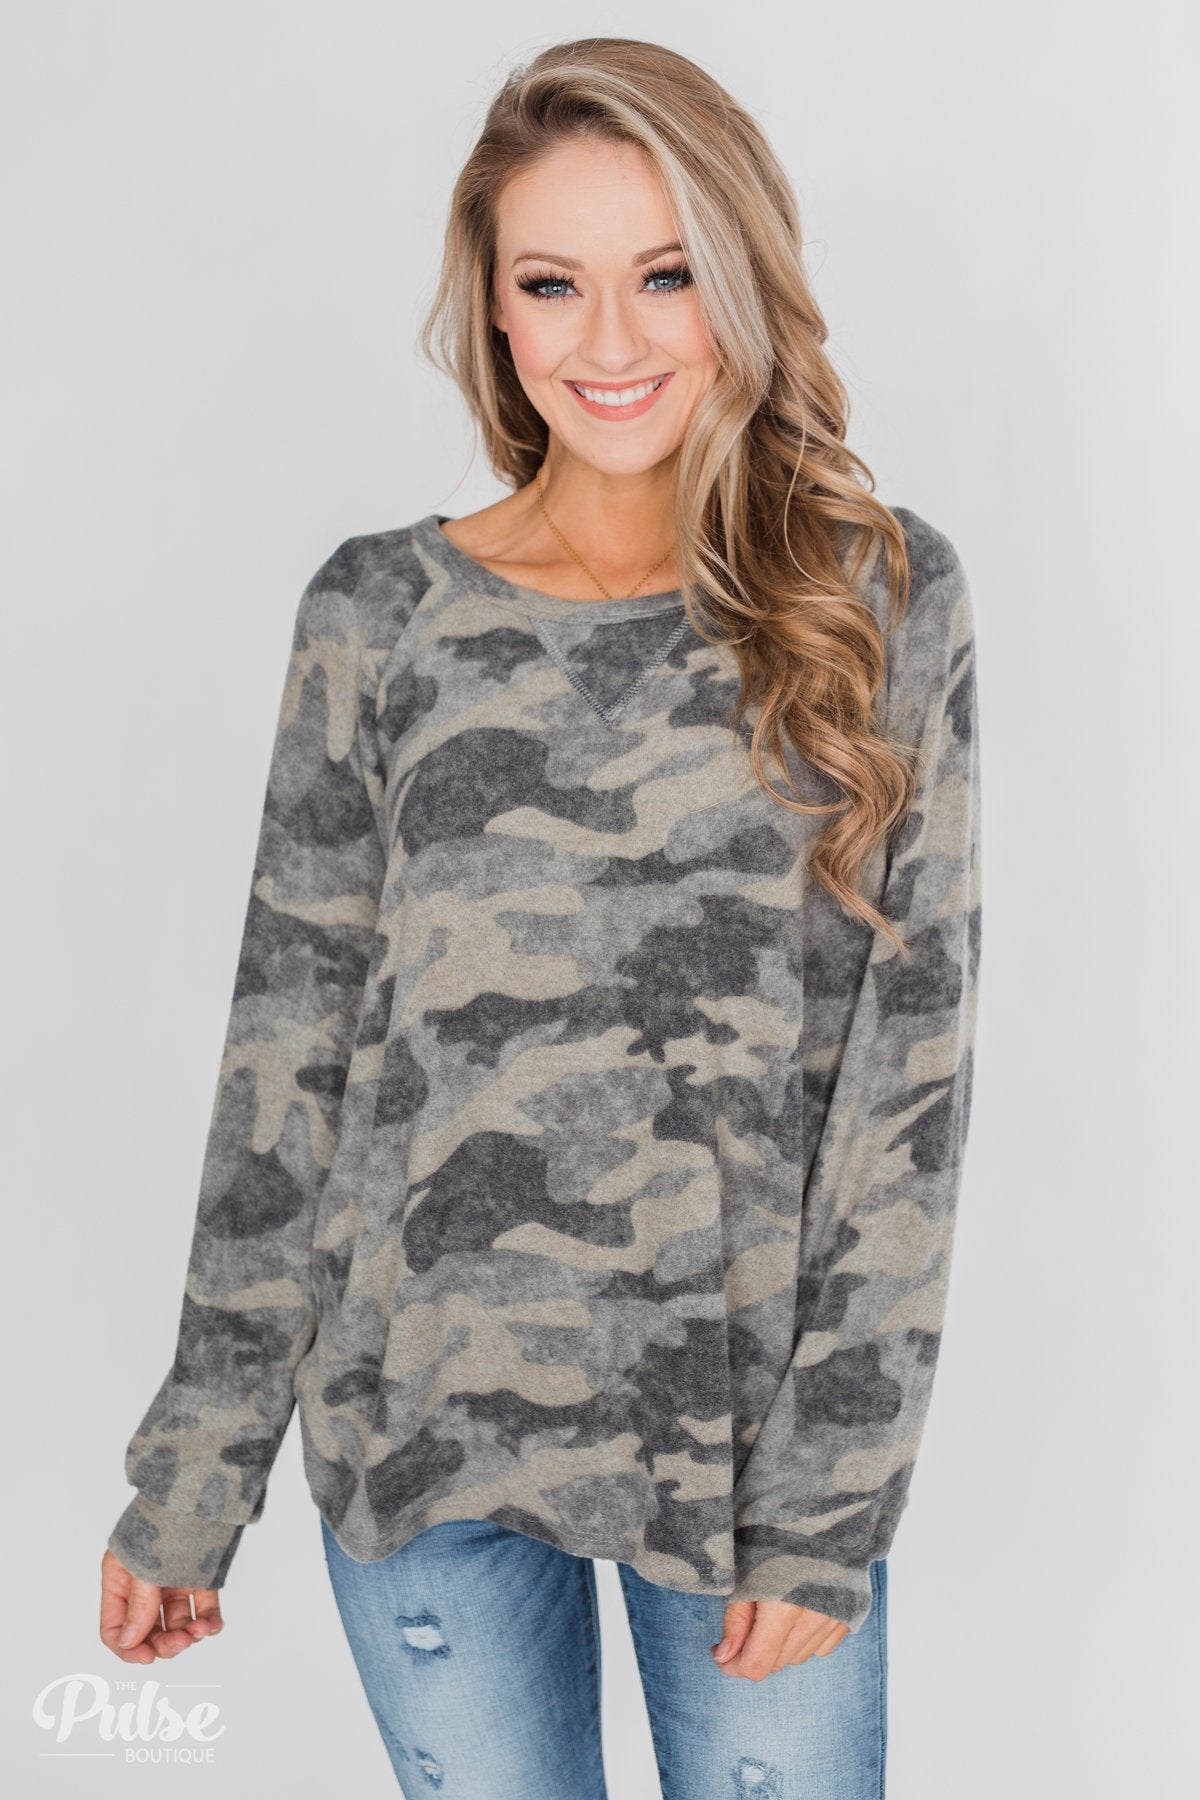 Fleece Pullover Top- Grey Camo – The Pulse Boutique